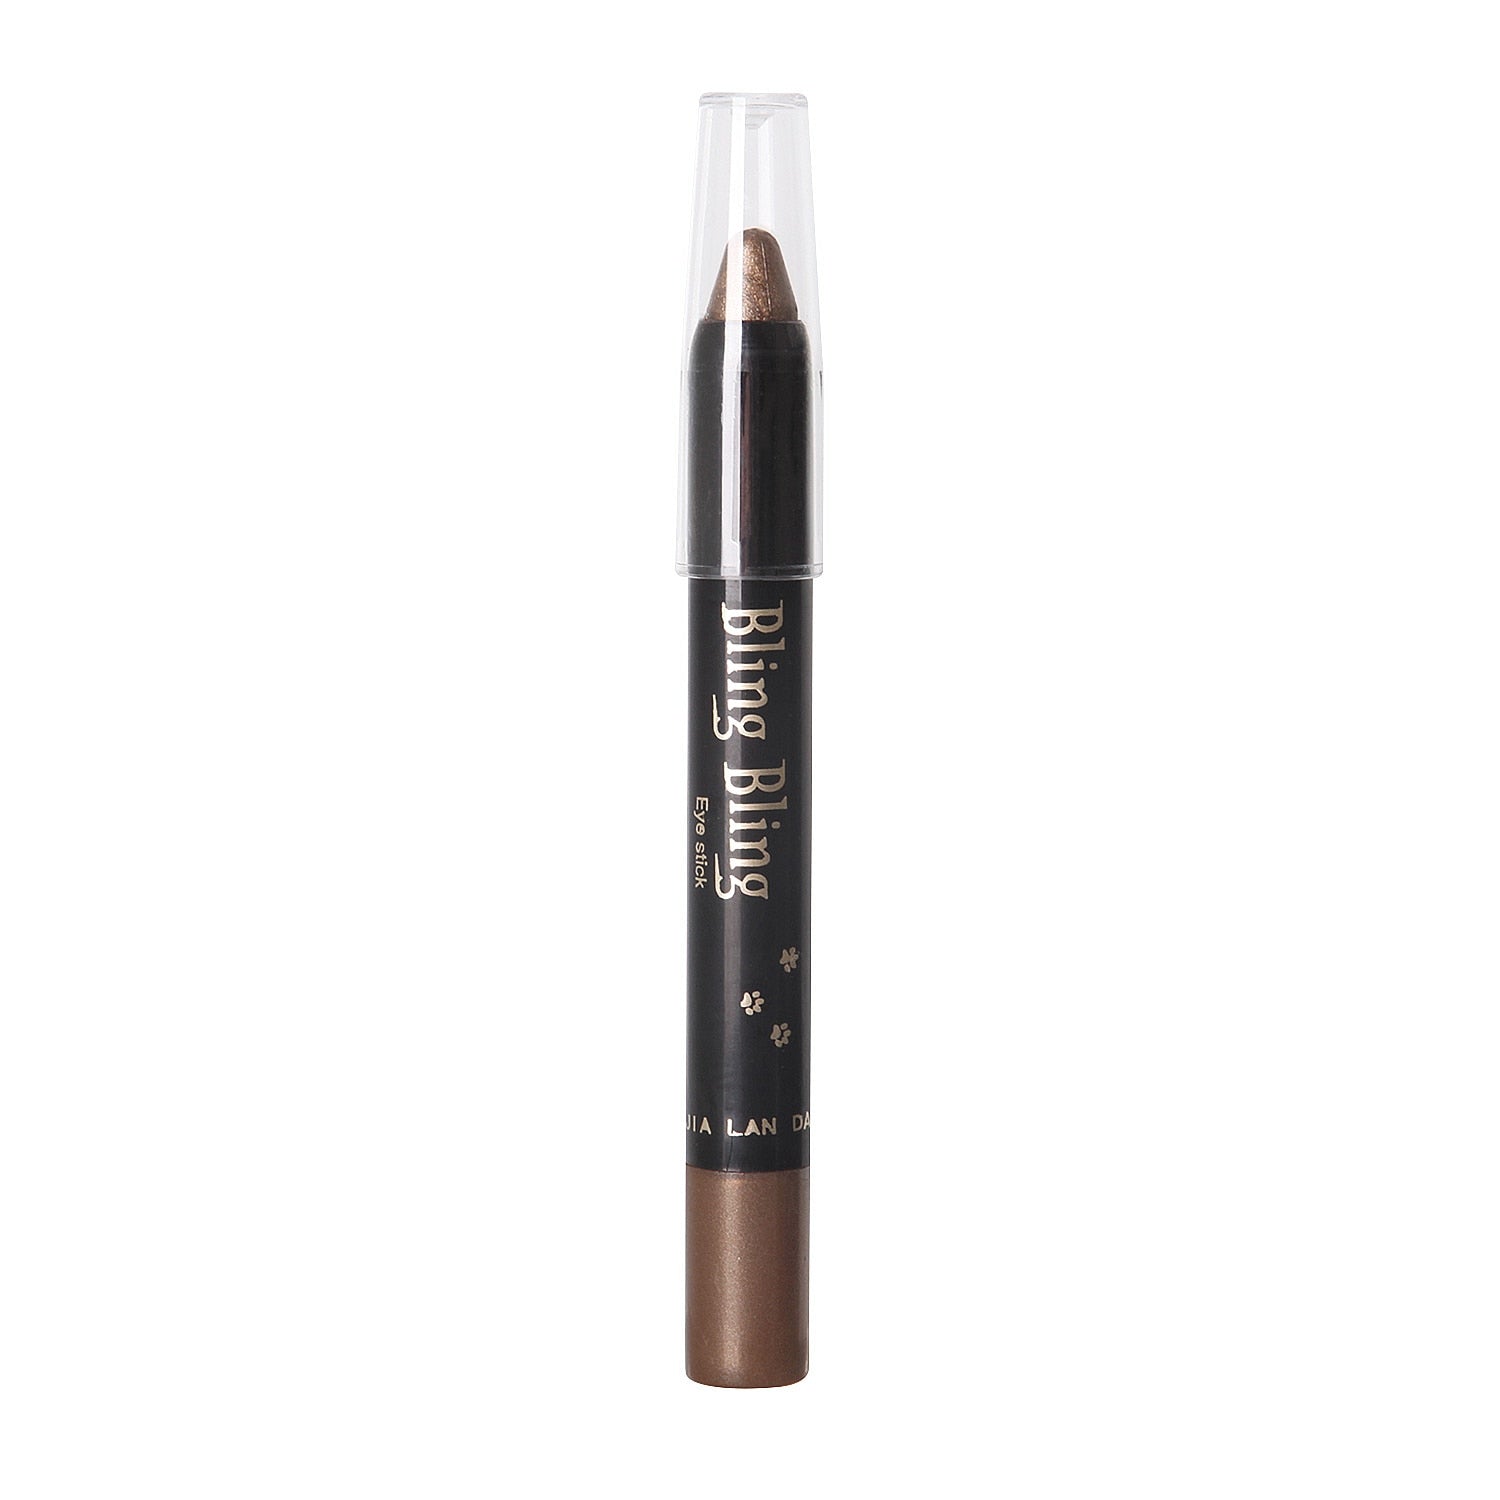 15 Color Waterproof Pearlescent Eyeshadow/Eyeliner Pencil